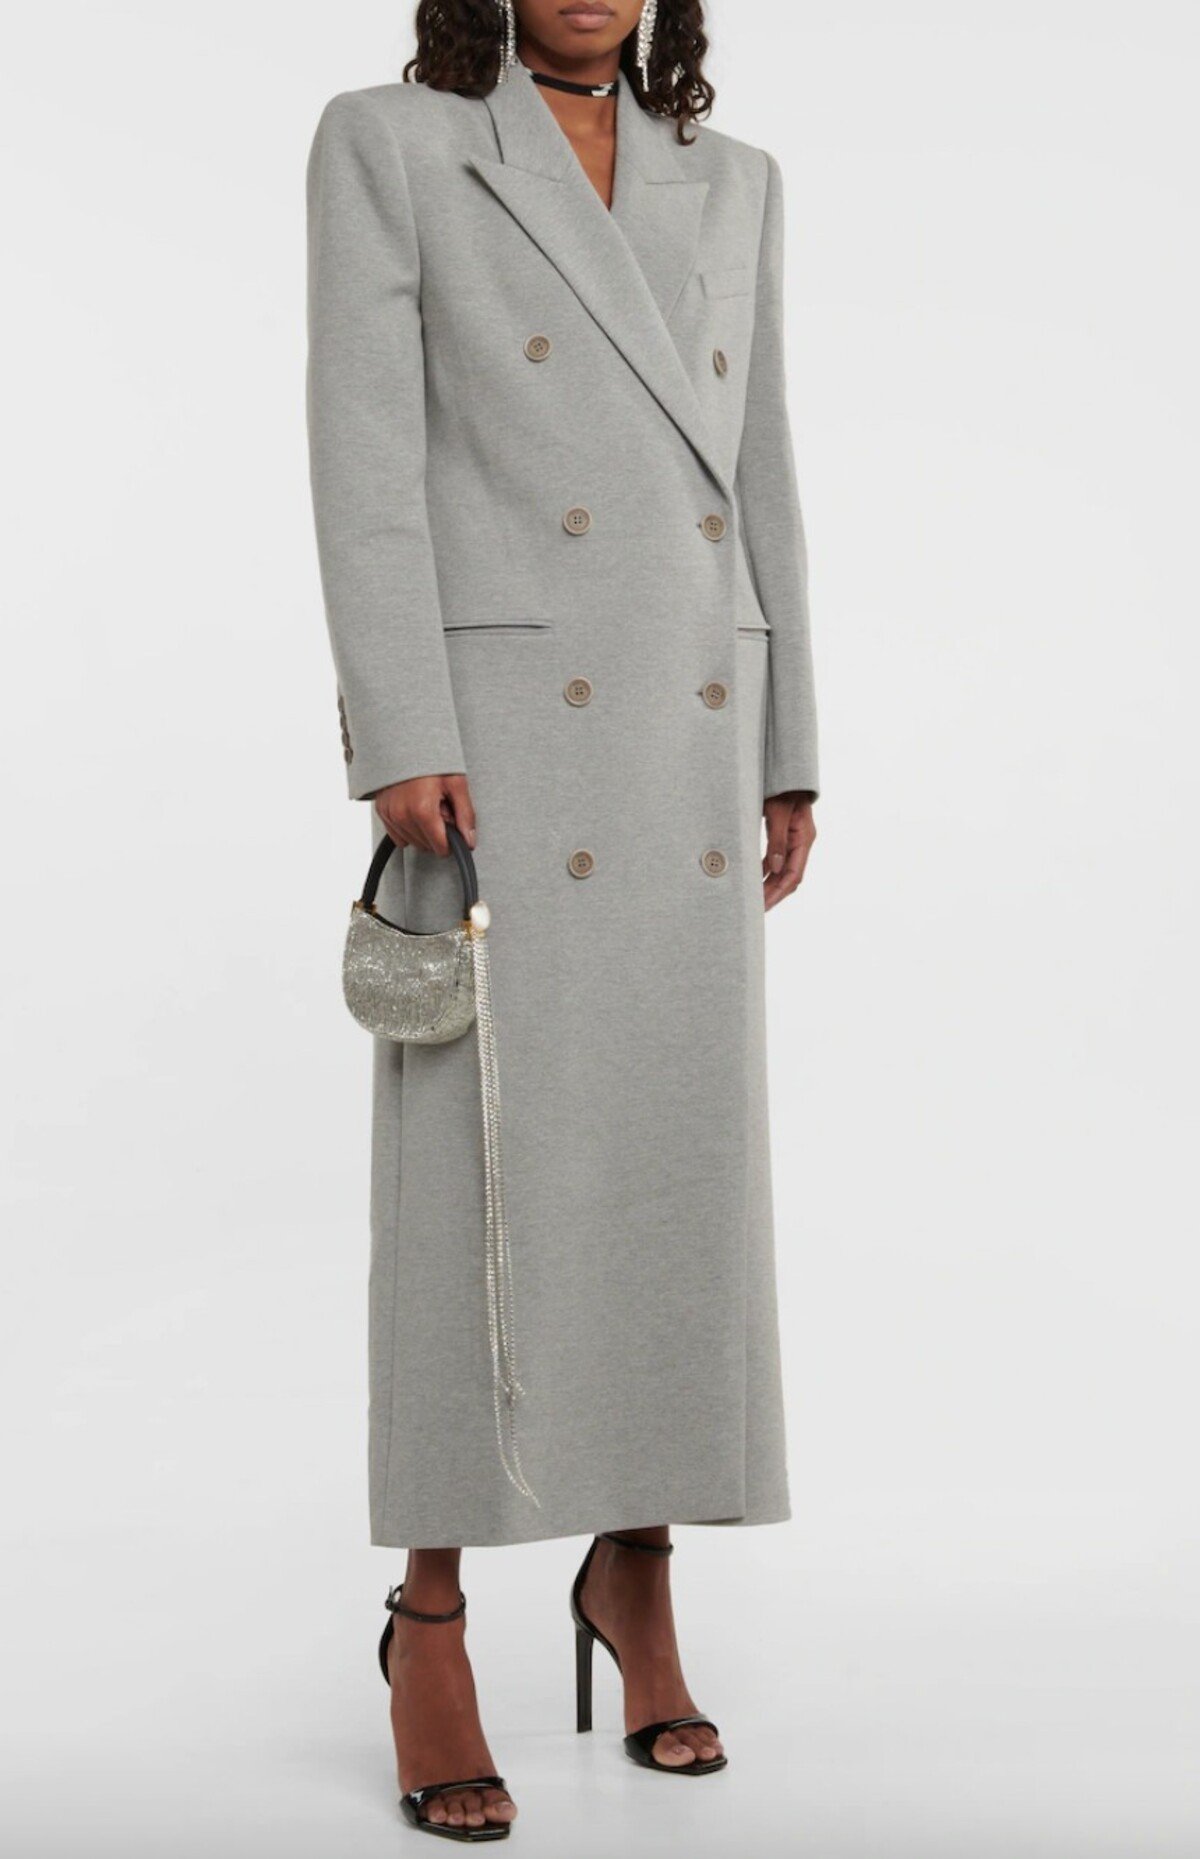 Sivý dvojradový kabát od značky Magda Butrym je náročnejšou finančnou záležitosťou, no rozhodne v ňom nestretneš každú druhú. Ak sa správne vyhráš s doplnkami, pokojne si s ním vyčaríš aj parádny streetstylový outfit. Konkrétny model ťa vyjde na 1395 eur.